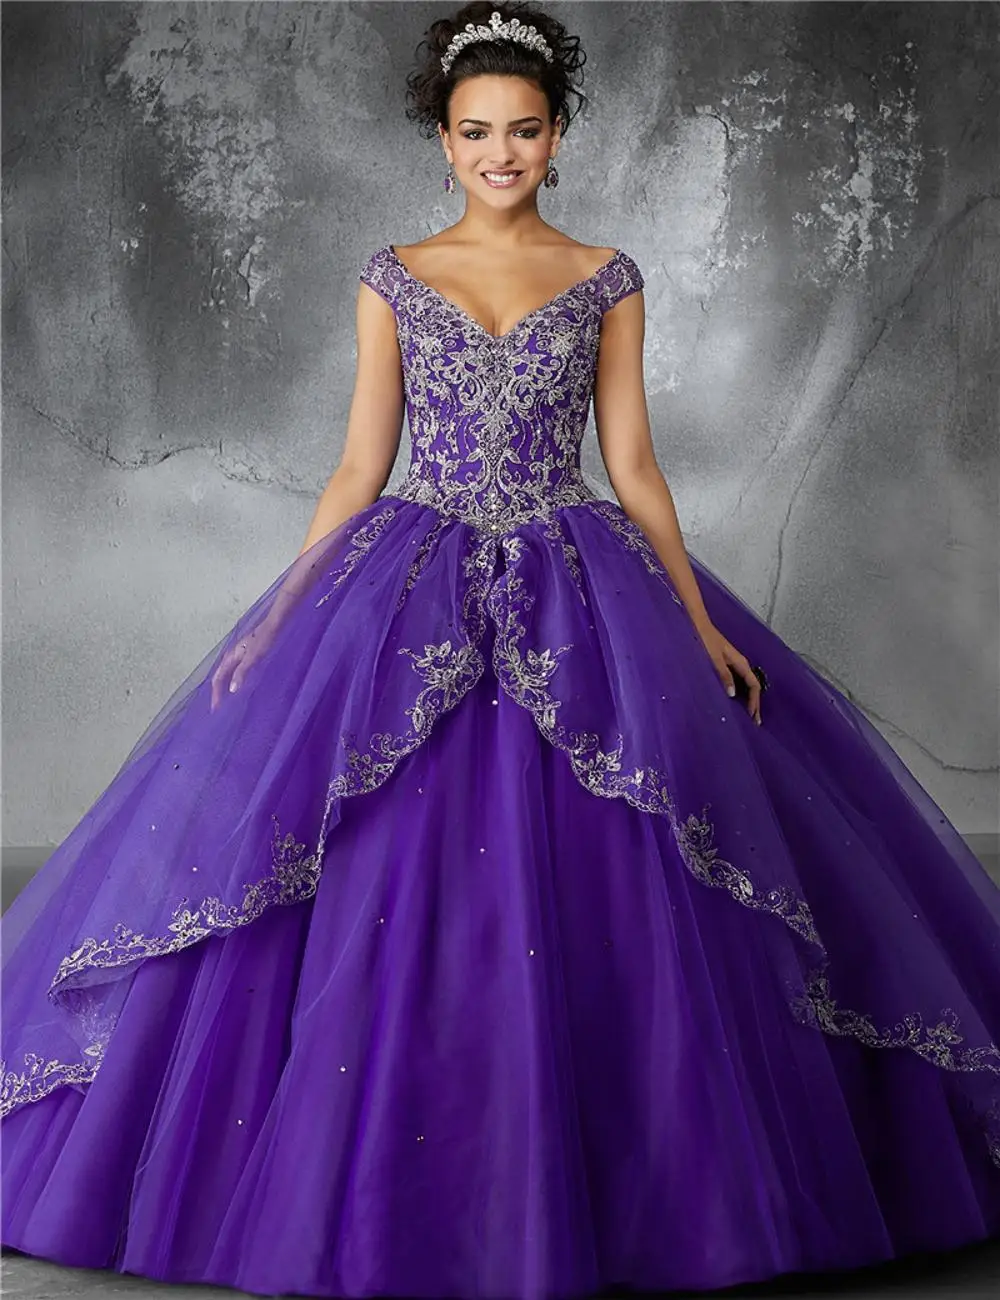 purple poofy dress